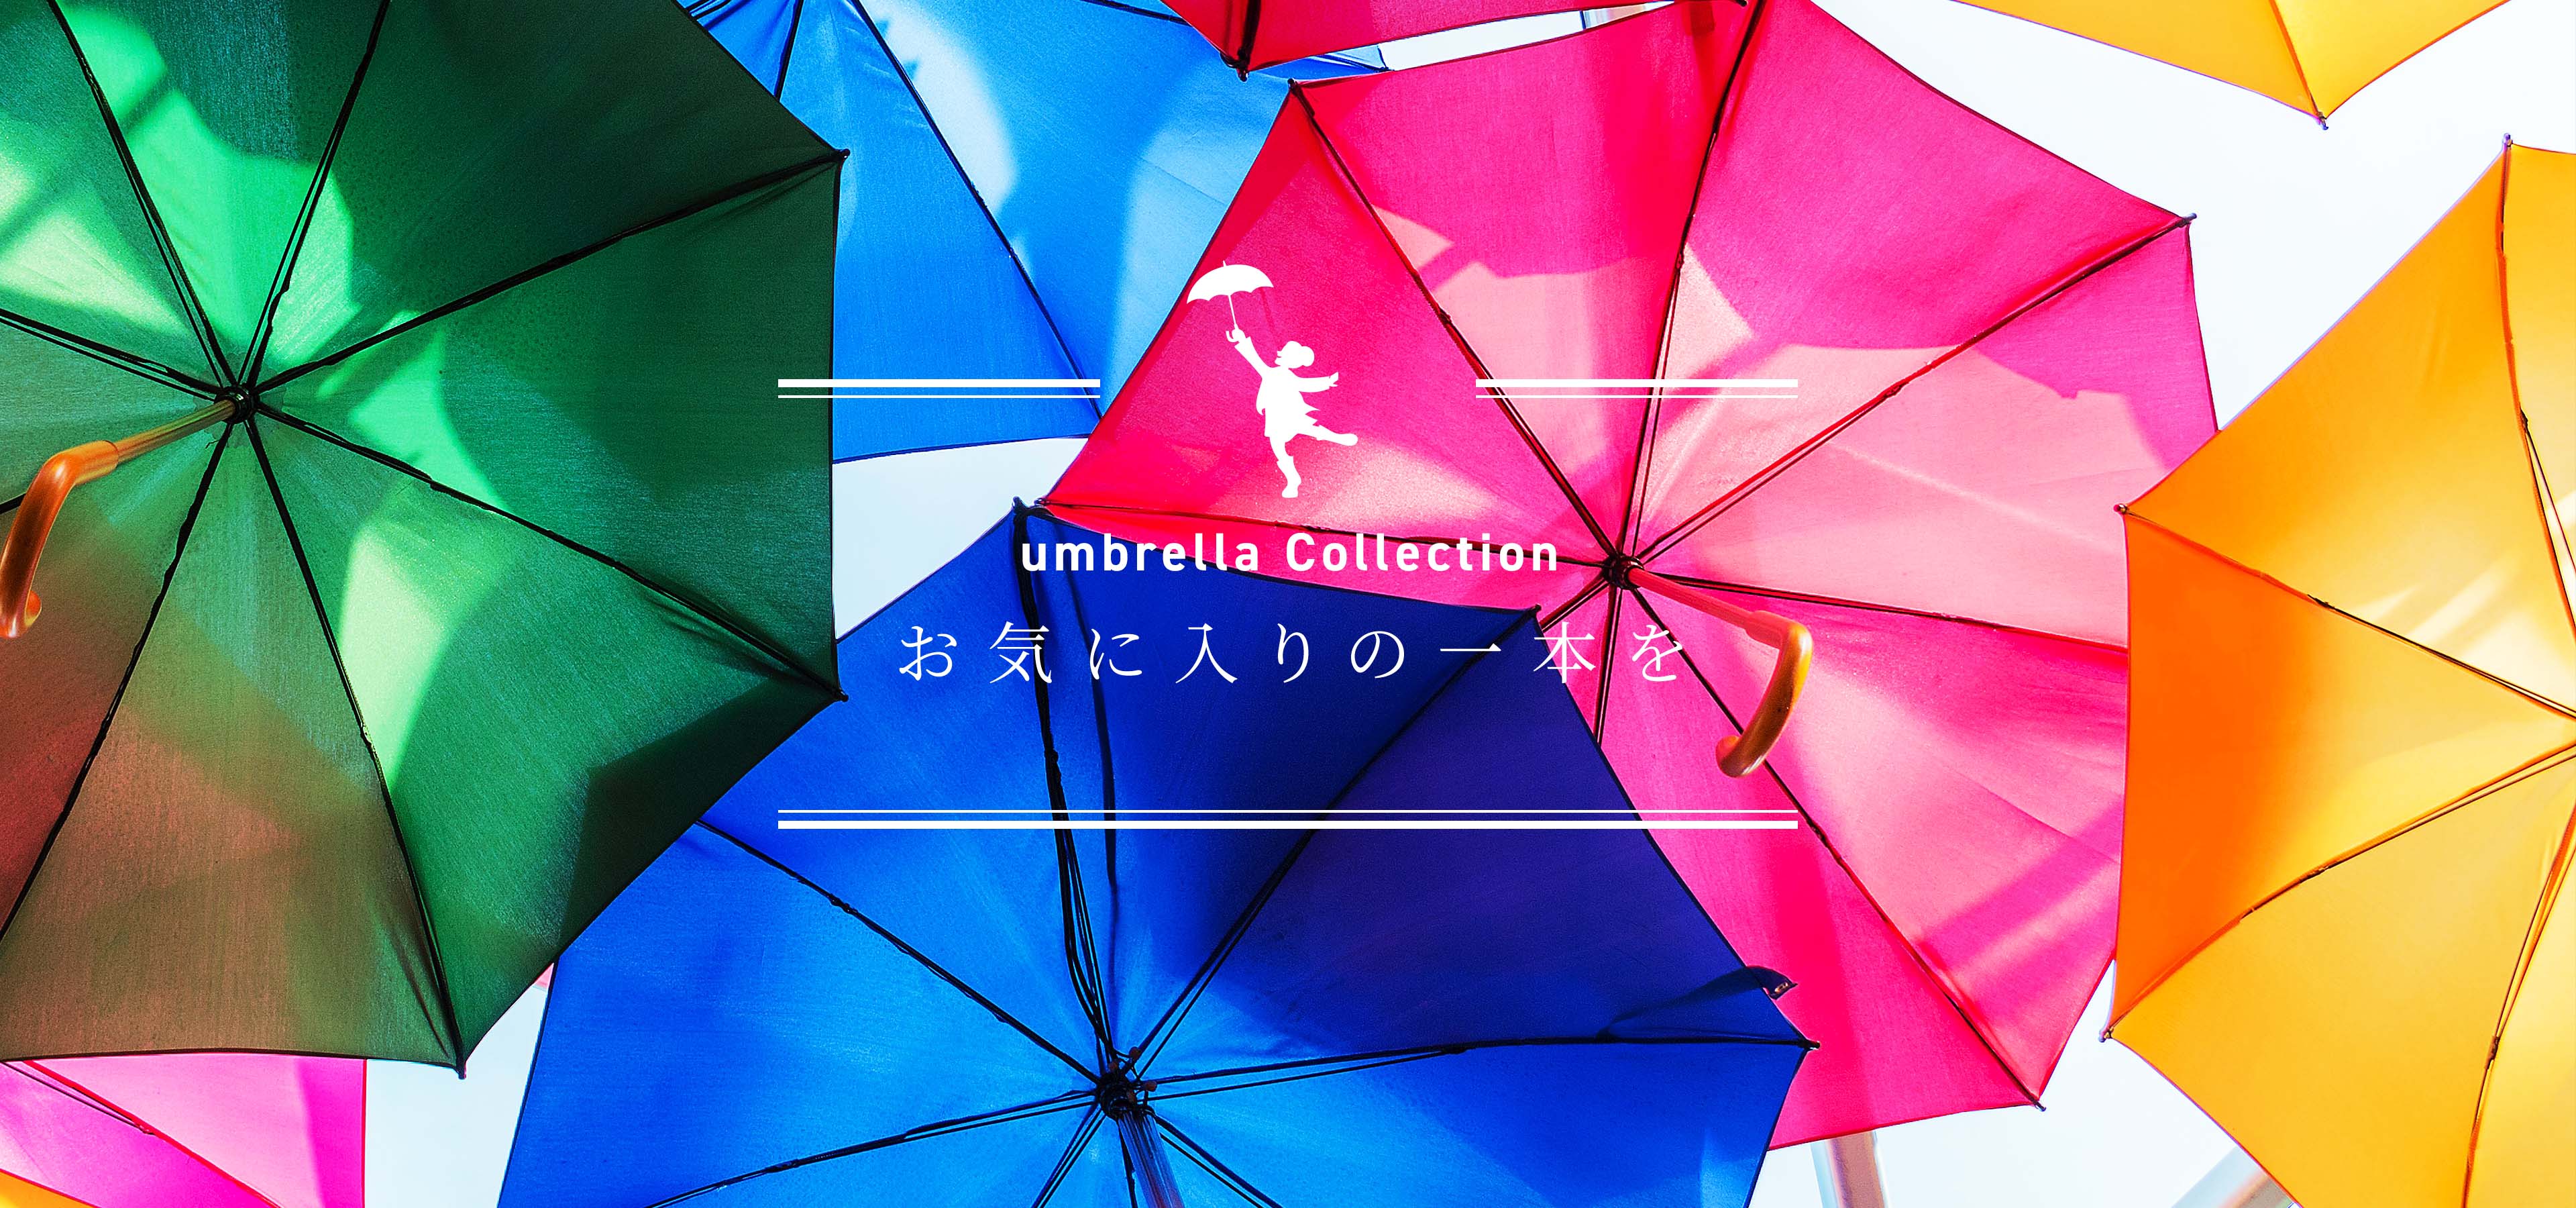 umbrella Collection お気に入りの一本を